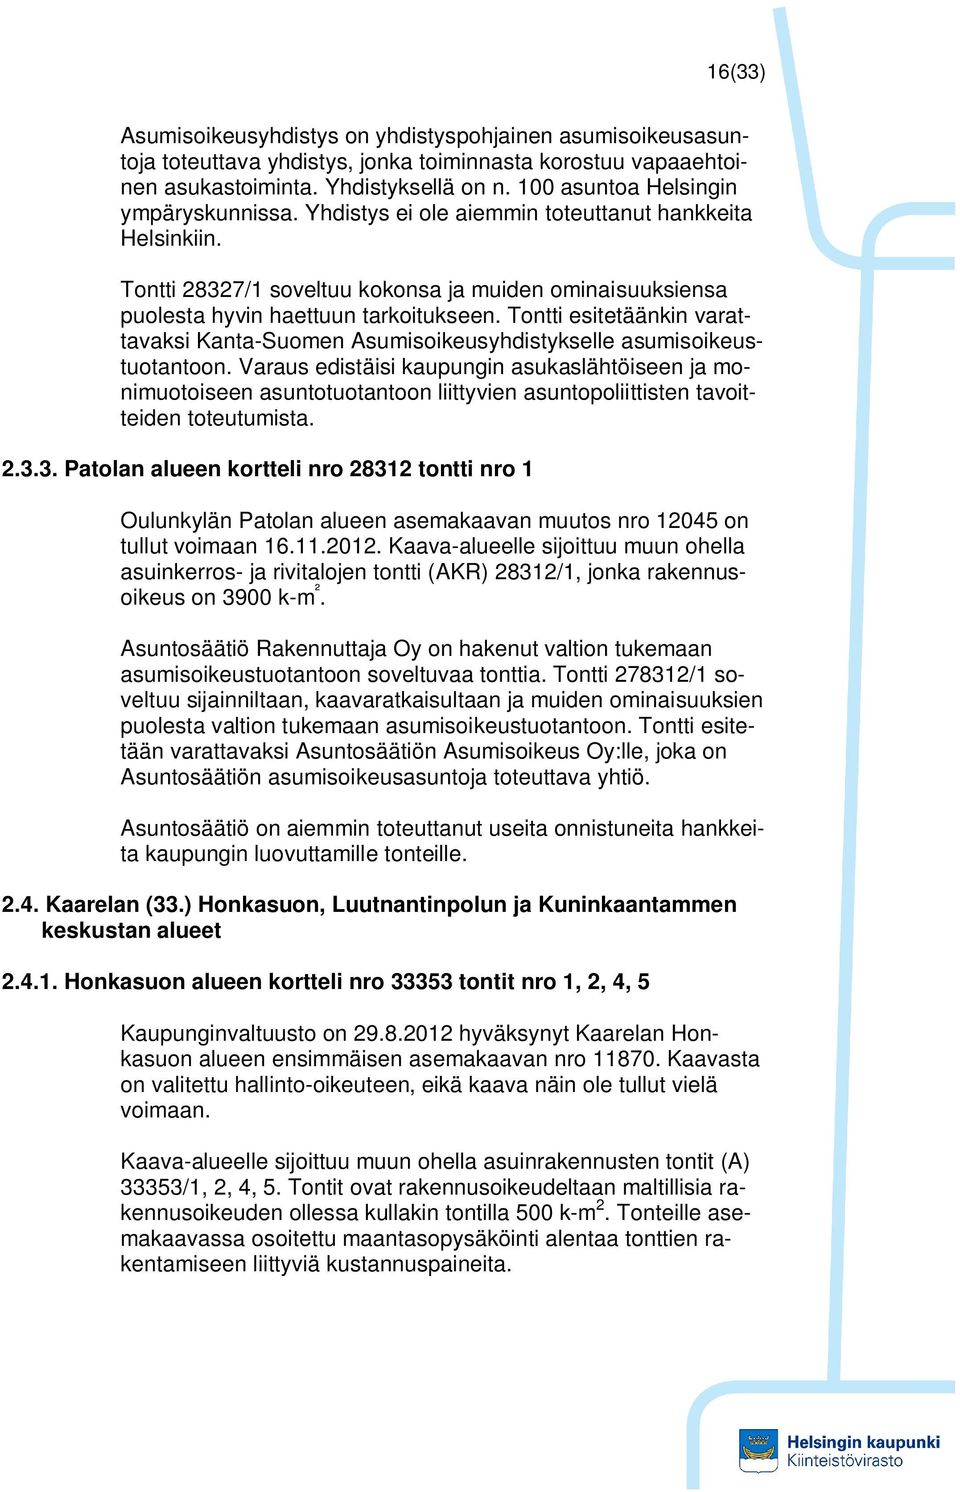 Tontti esitetäänkin varattavaksi Kanta-Suomen Asumisoikeusyhdistykselle asumisoikeustuotantoon.